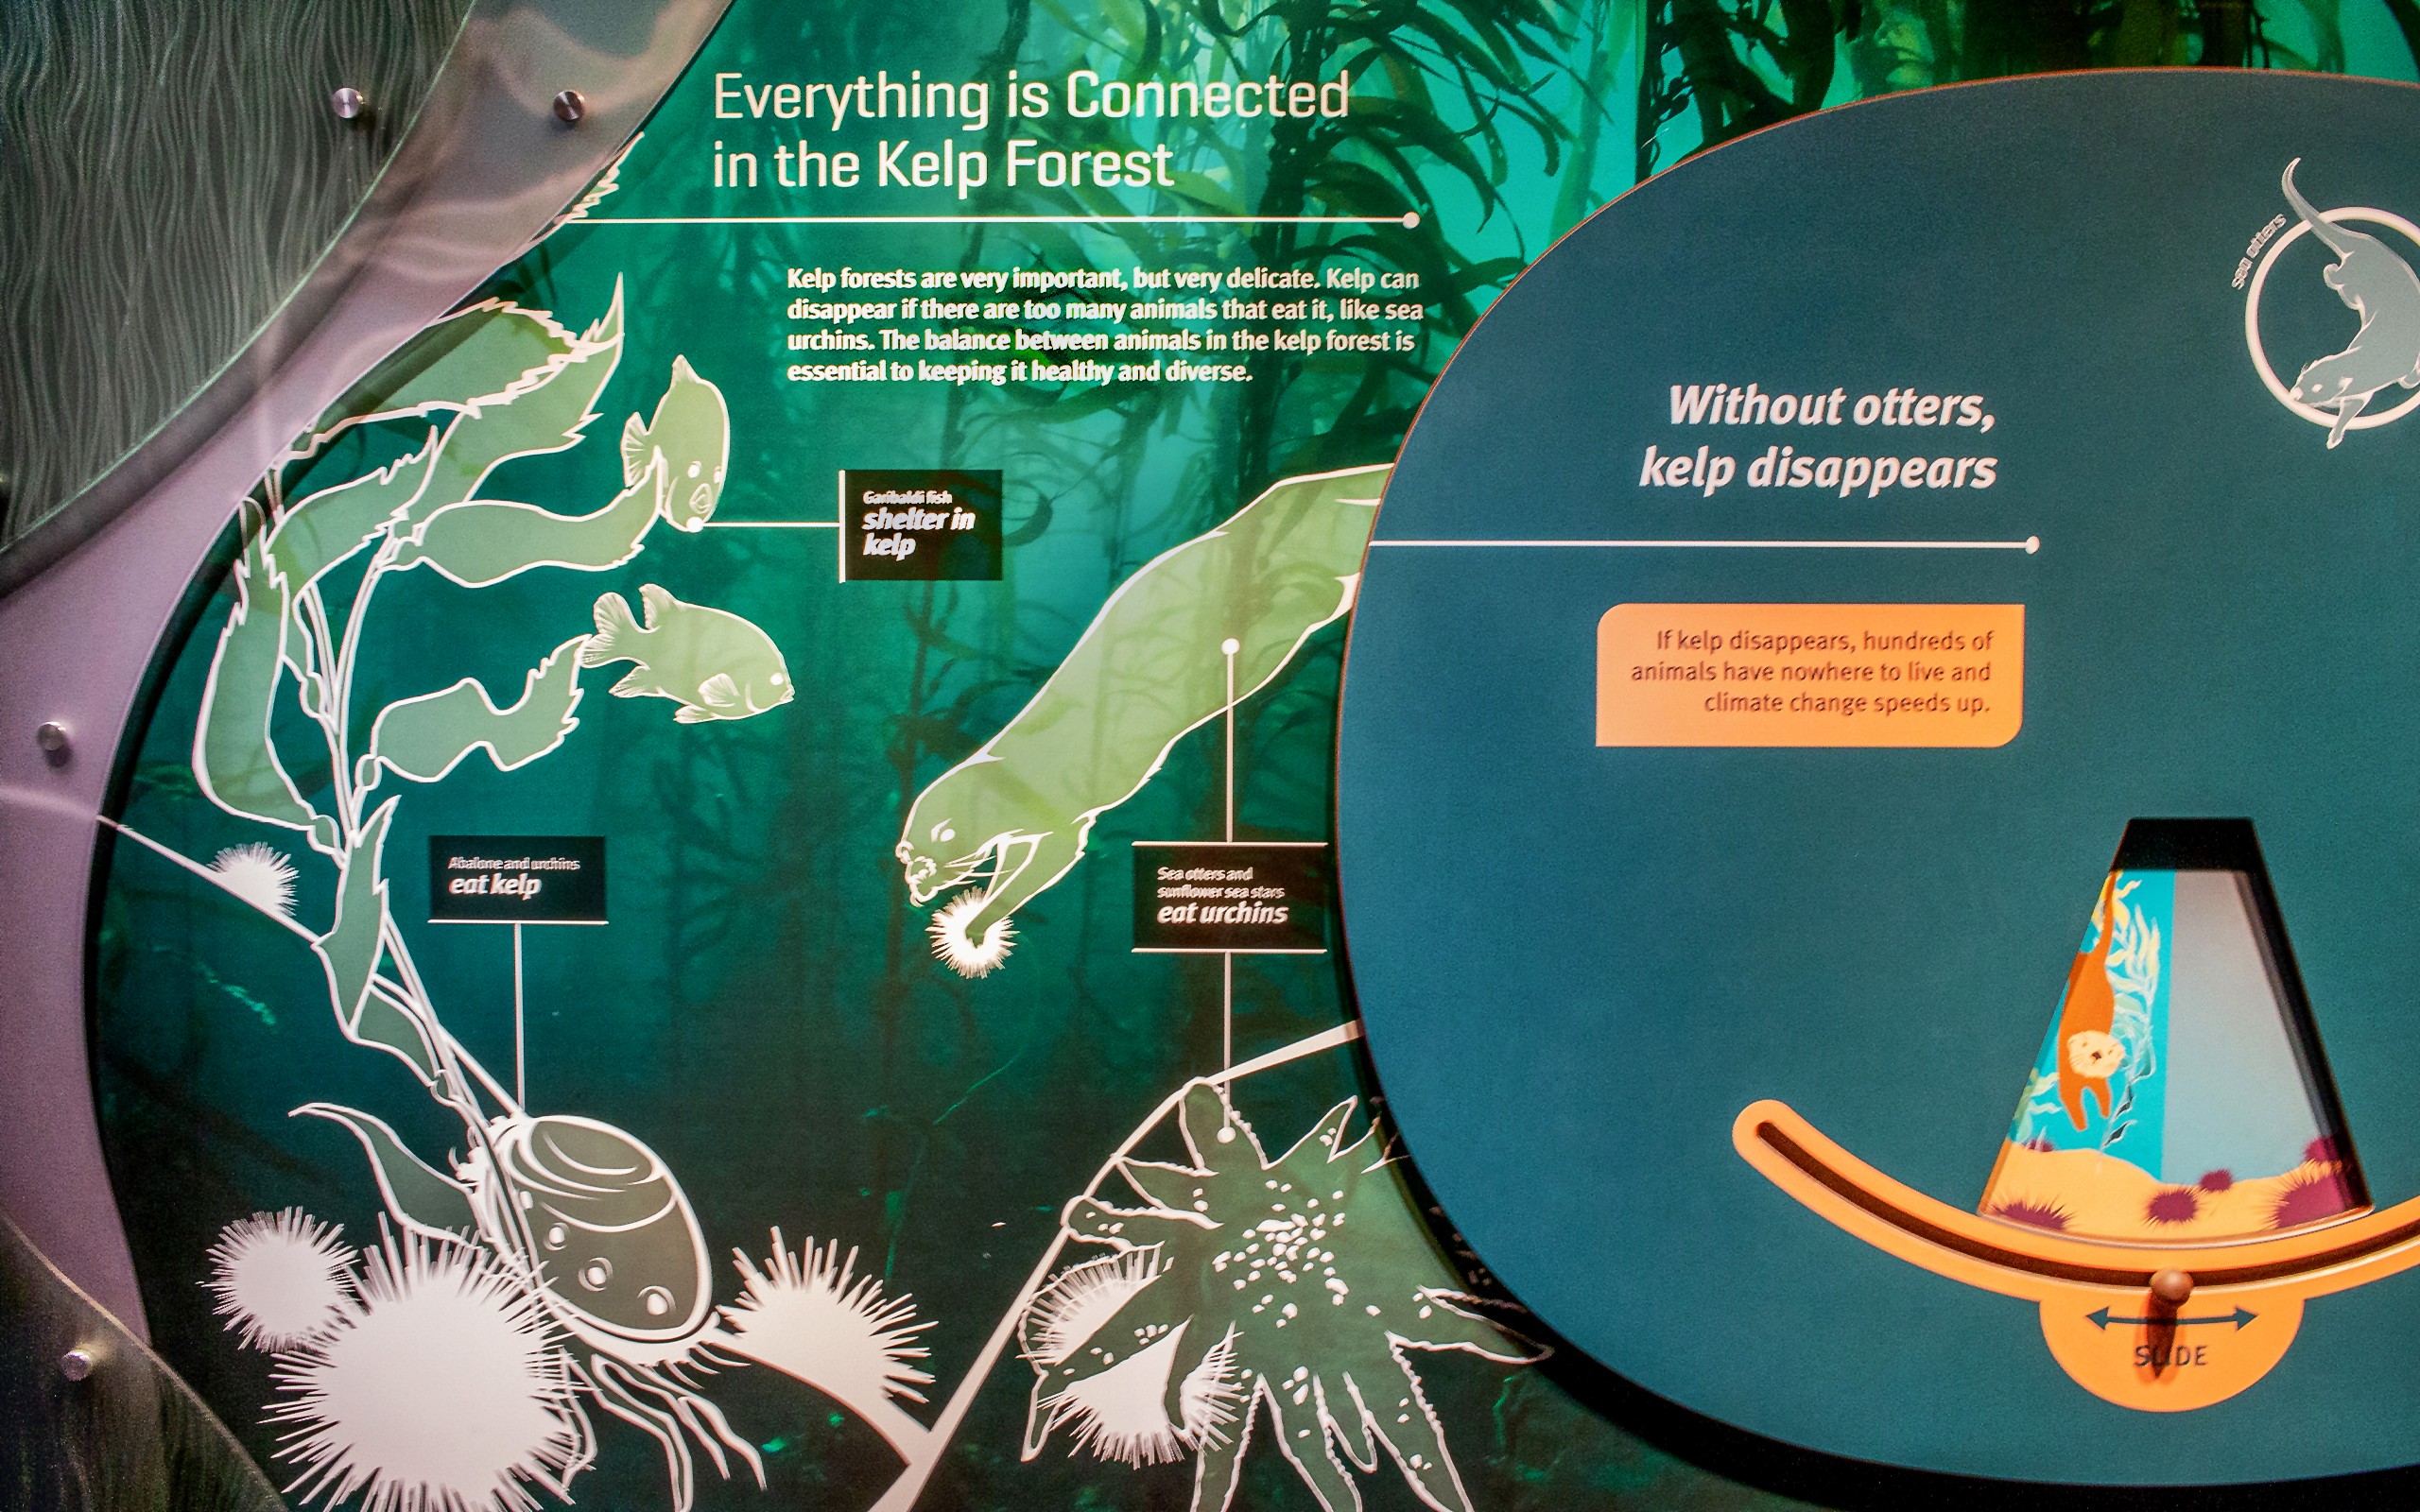 New York Aquarium Sea Change exhibit interactive graphics